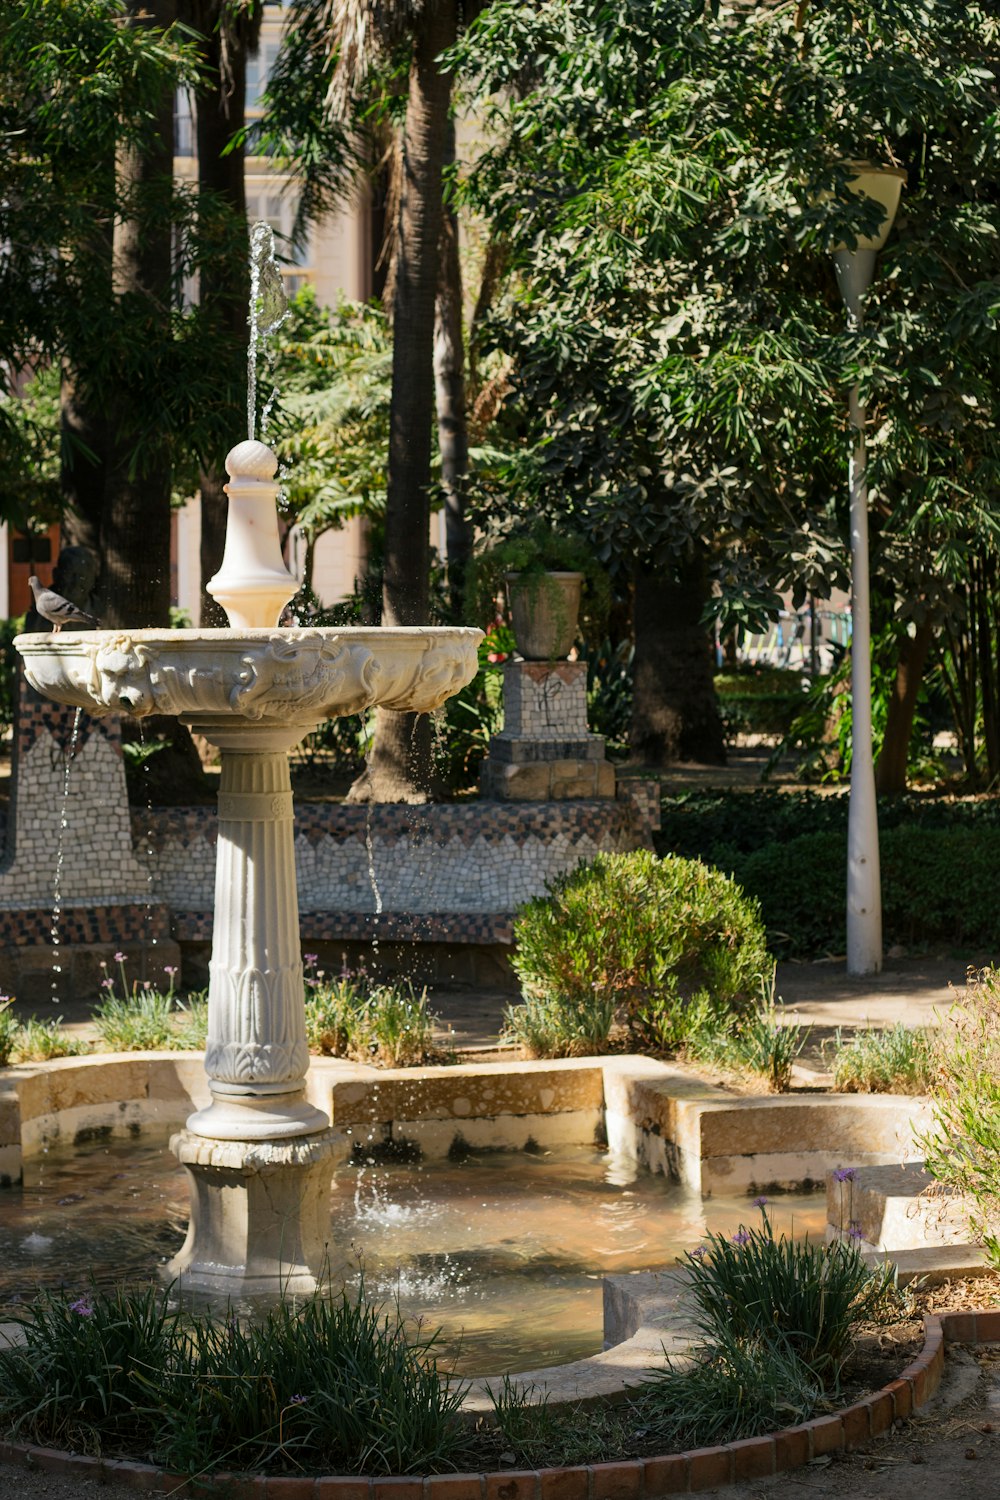 a fountain in a park